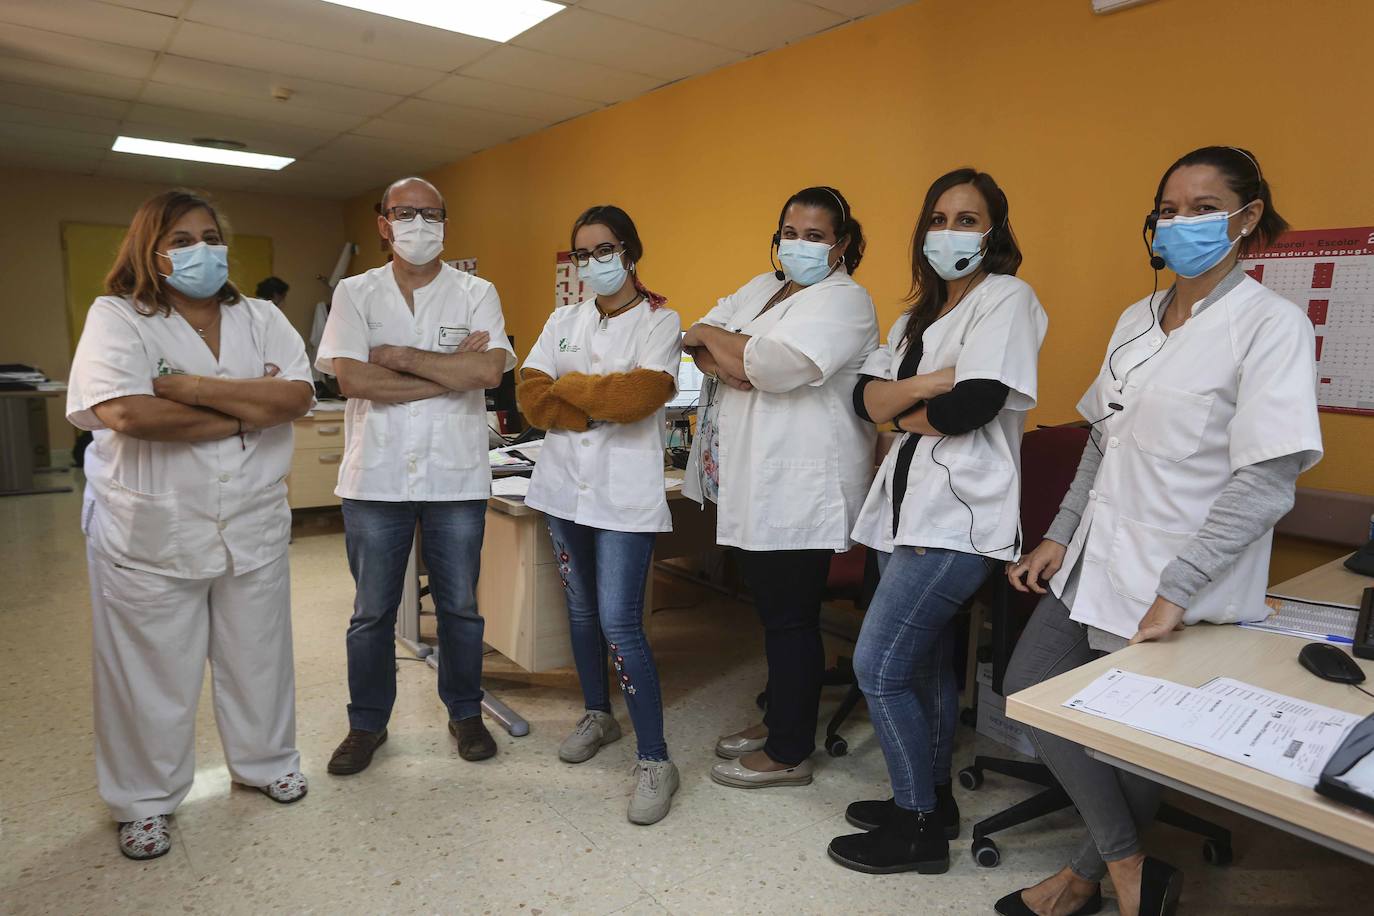 Quinta planta. La epidemióloga Mara Álvarez y el equipo de seguimiento: Rafael Romero, Carolina Mancera, Ana González, Zulaica Gutierrez y María Gallego.